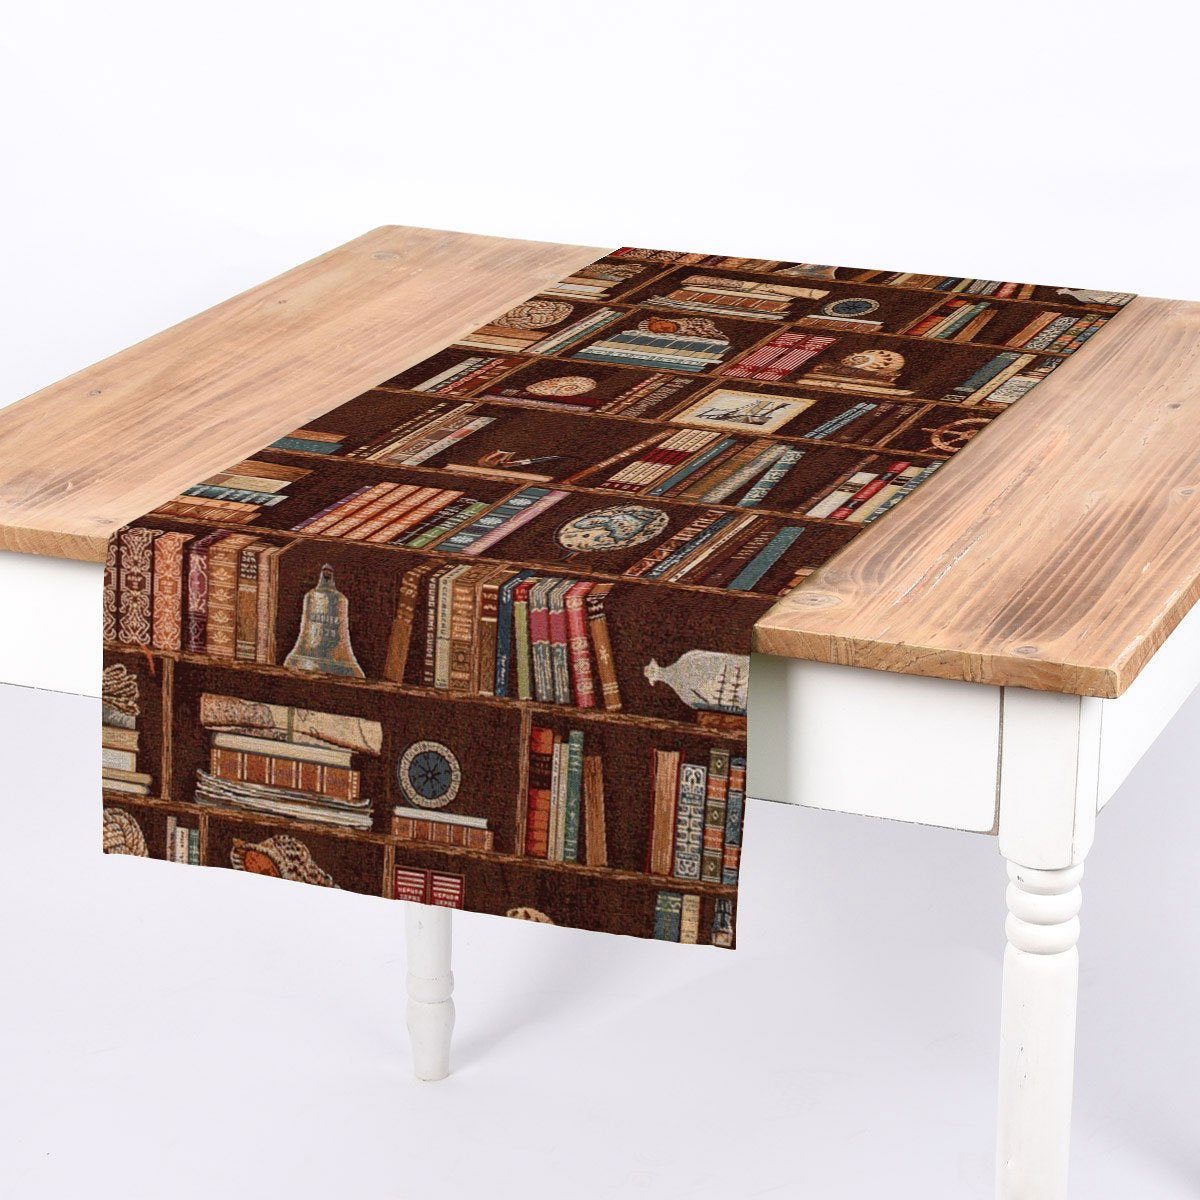 SCHÖNER LEBEN. Tischläufer SCHÖNER LEBEN. Tischläufer Premium Bookshelve Marine Bücherregal Nau, handmade